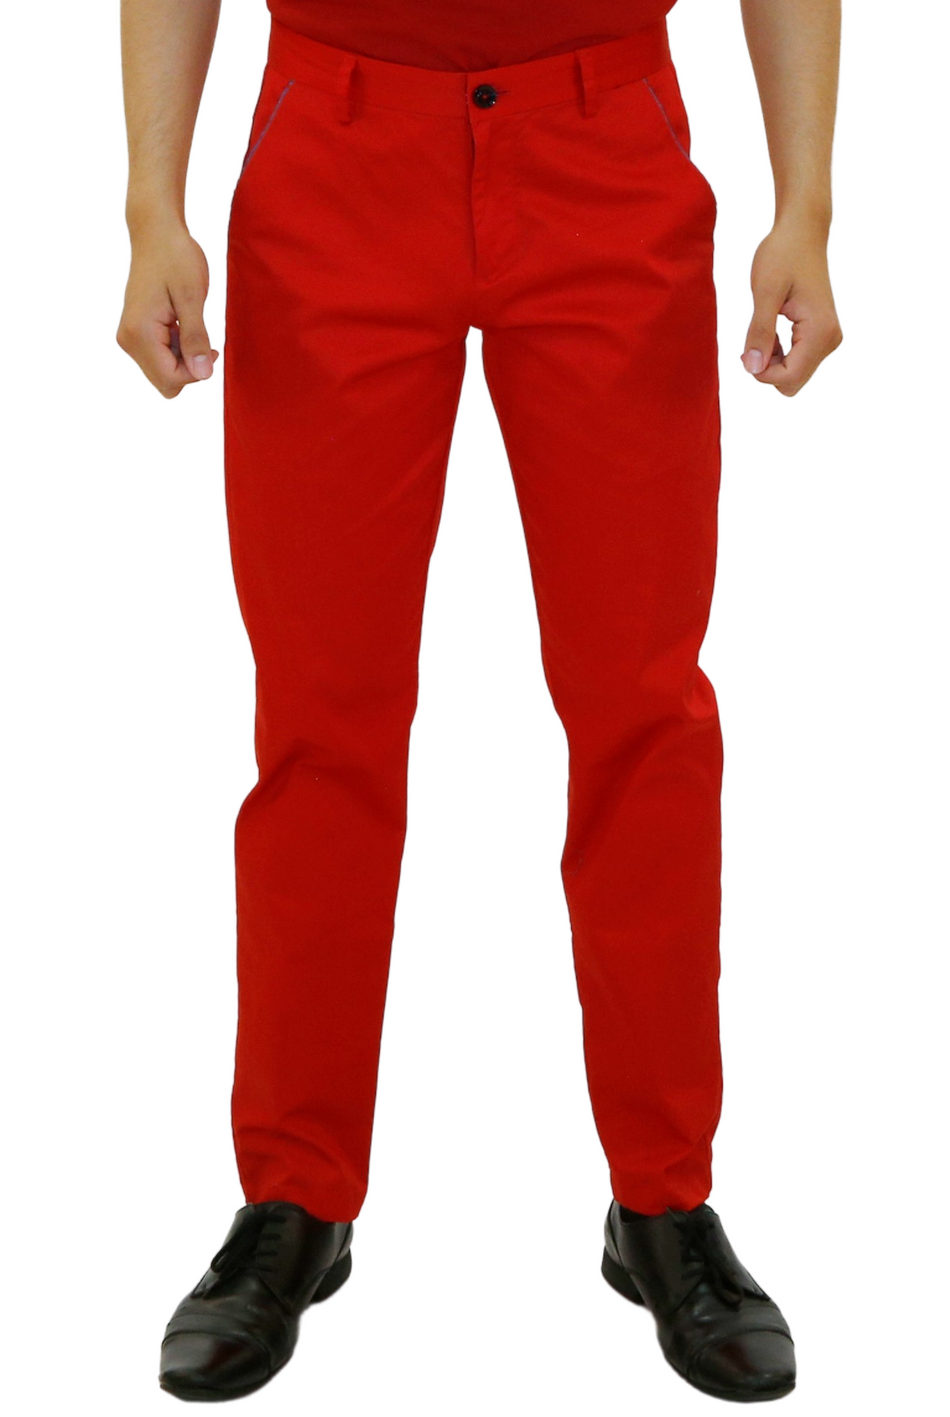 BESPOKE  Red Pants for Men  183122  wwwbespokemodacom BESPOKE MODA